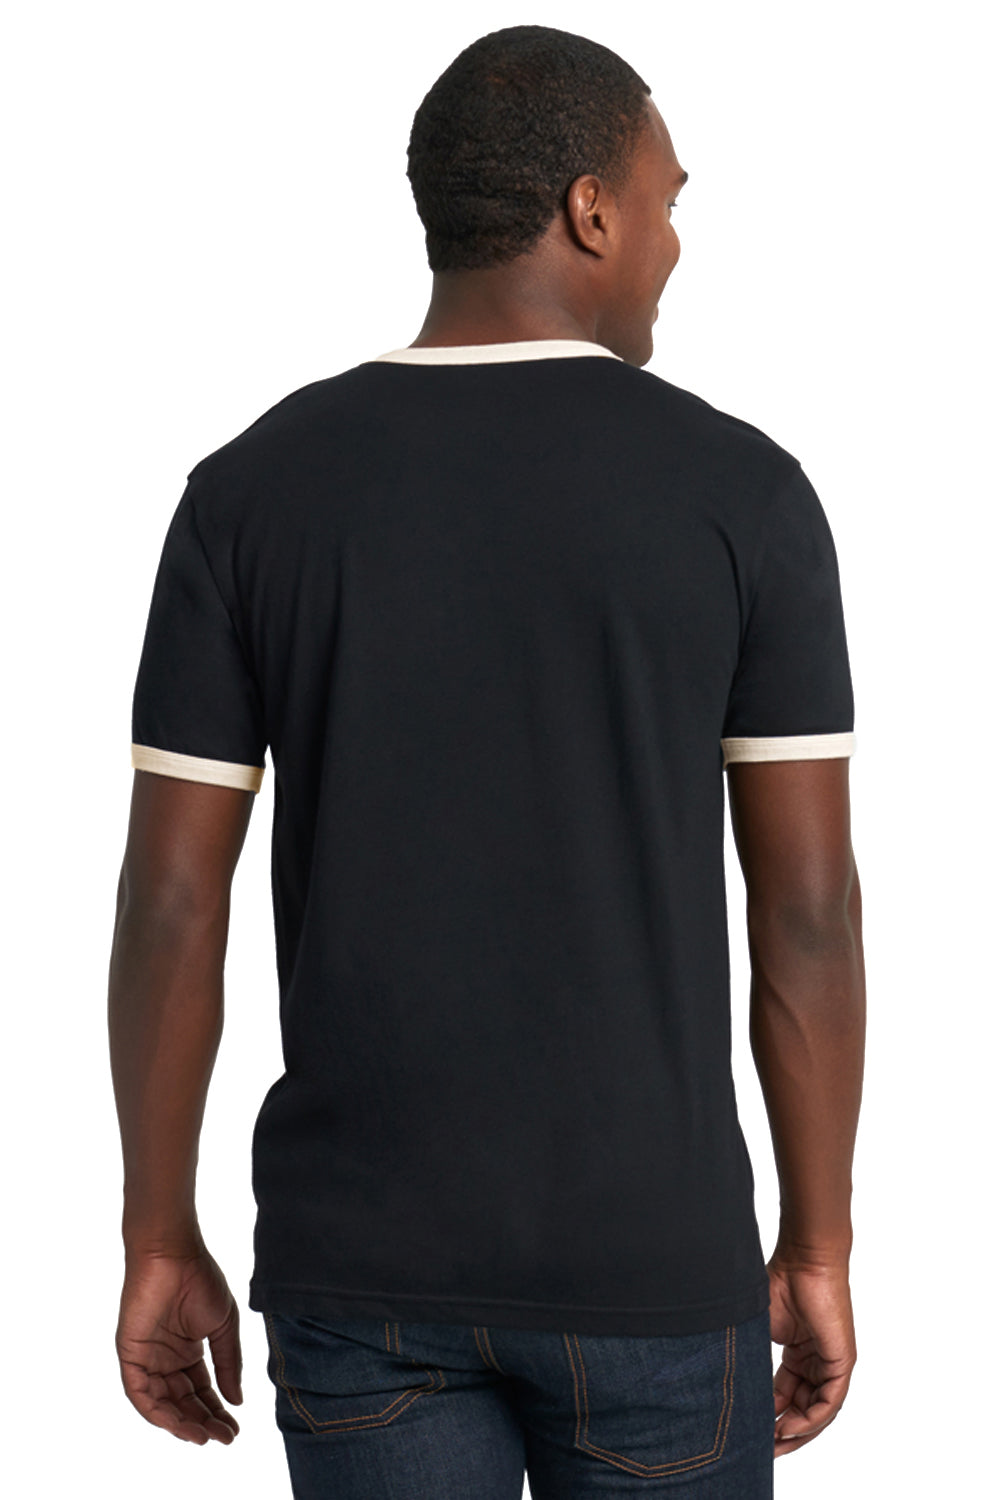 Next Level 3604 Fine Jersey Ringer Short Sleeve Crewneck T-Shirt Black/Natural Back